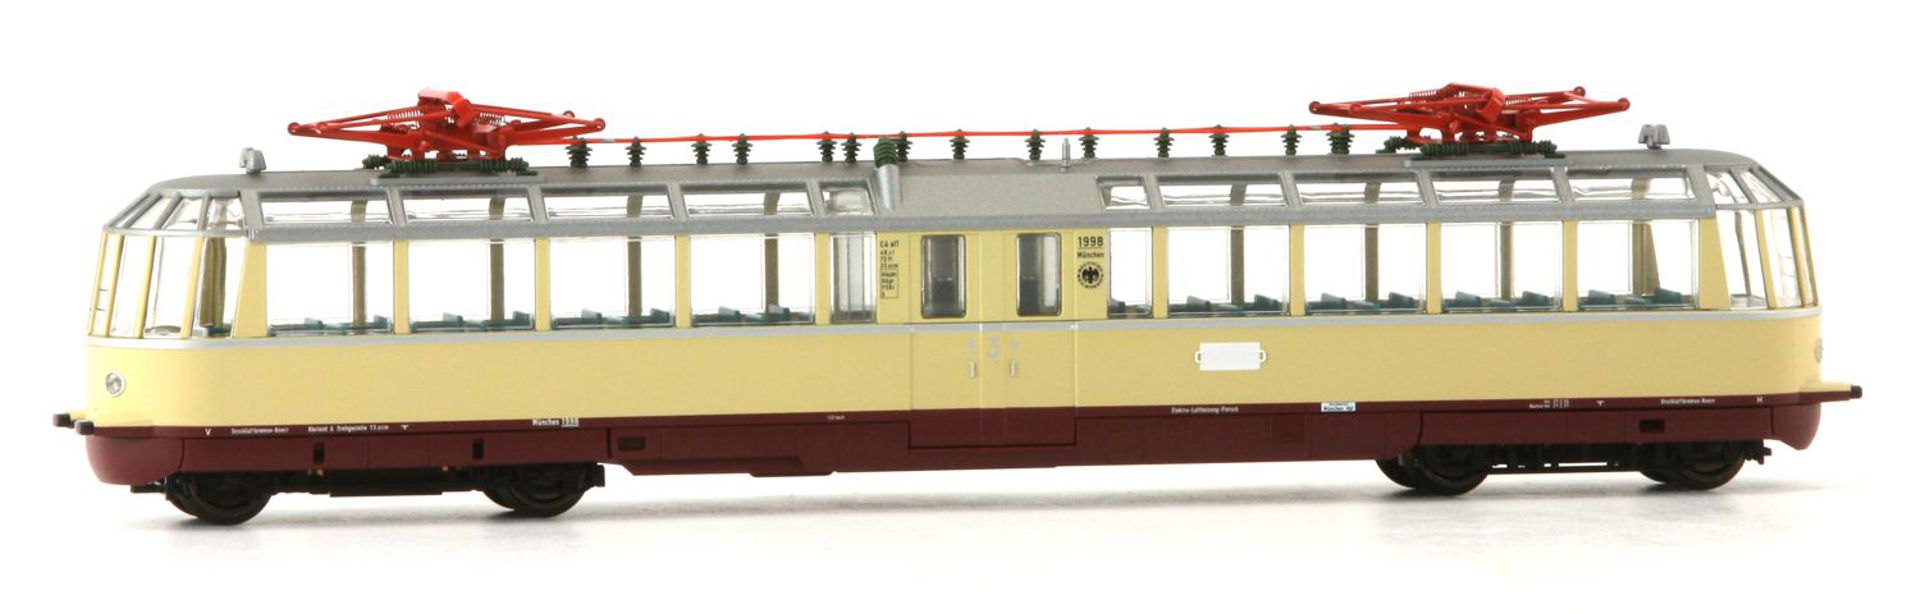 Kres 4913DS - Triebwagen 'Gläserner Zug' elT 1988, DRG, Ep.II, rot-beige, DC-Sound